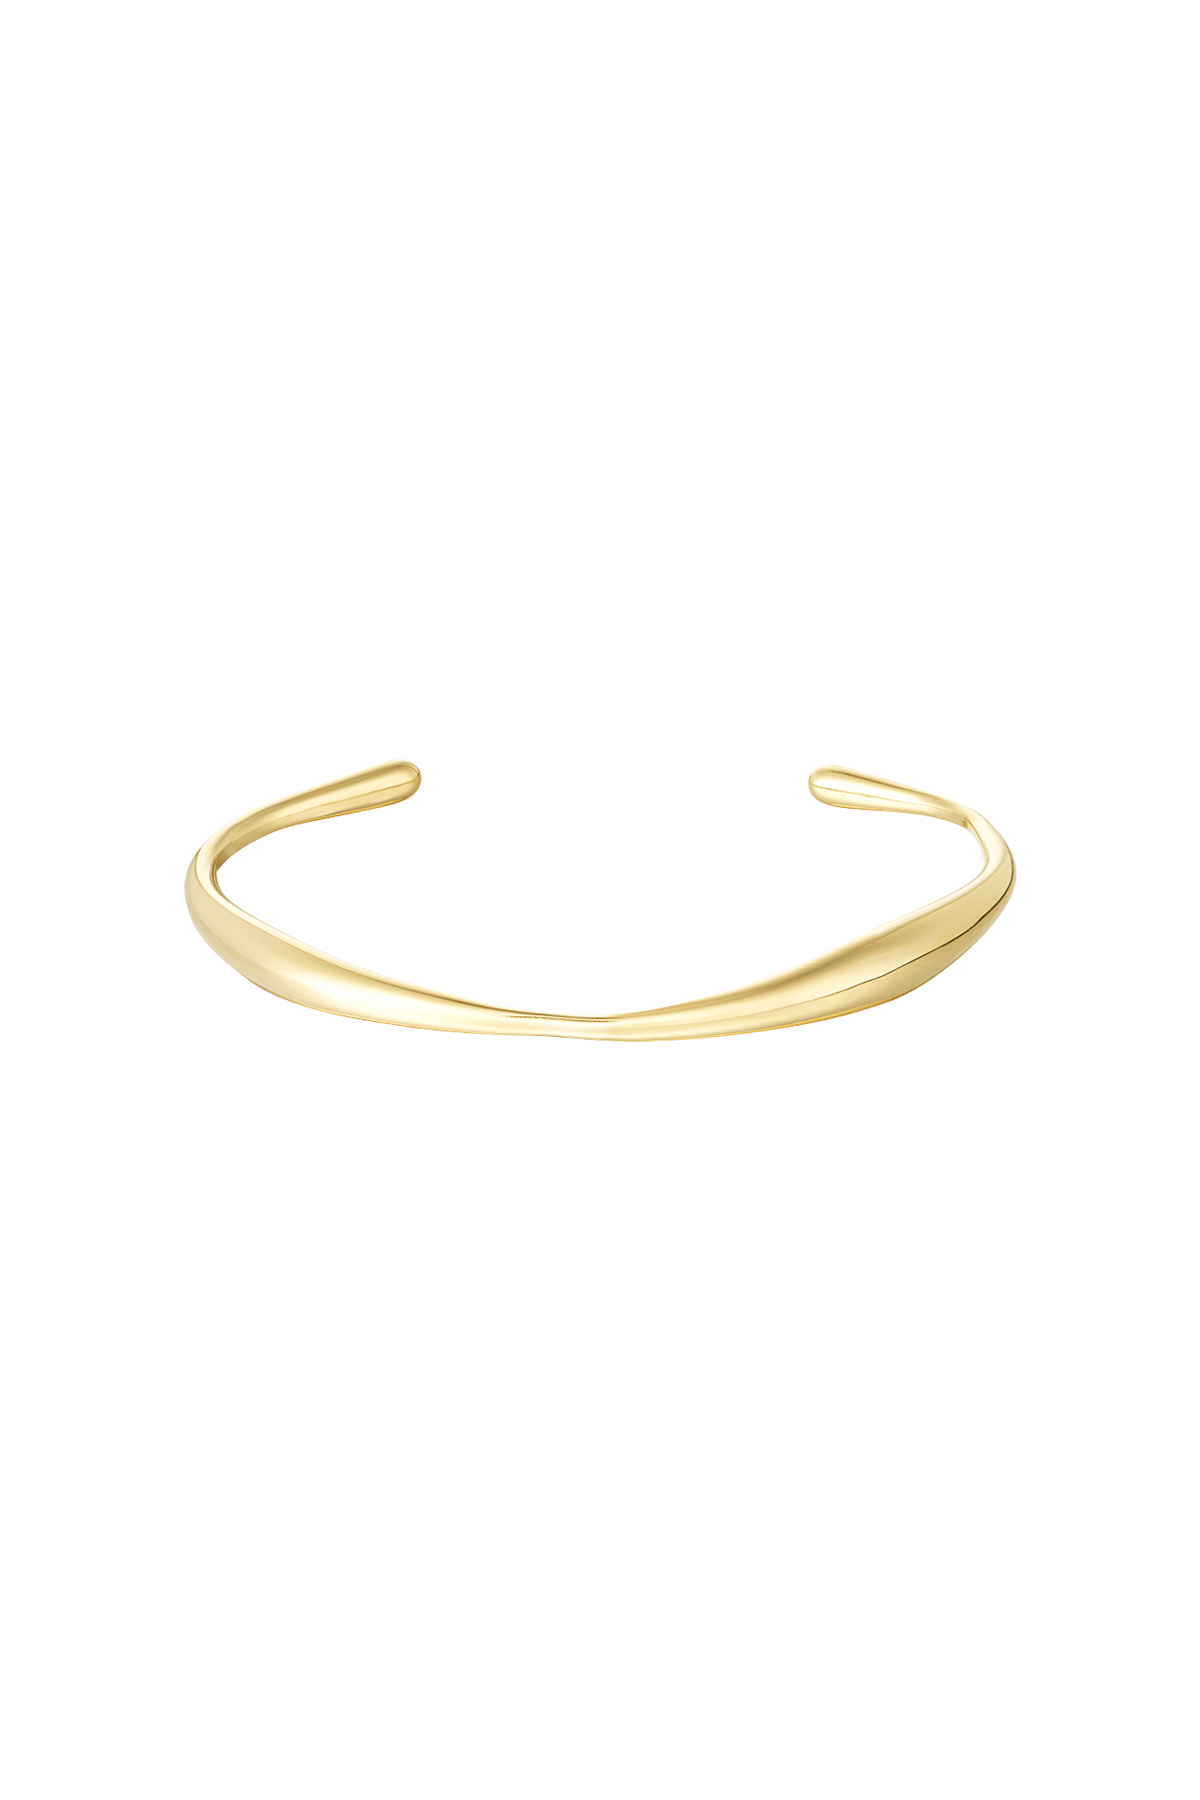 Armband in organischer Form – Gold 